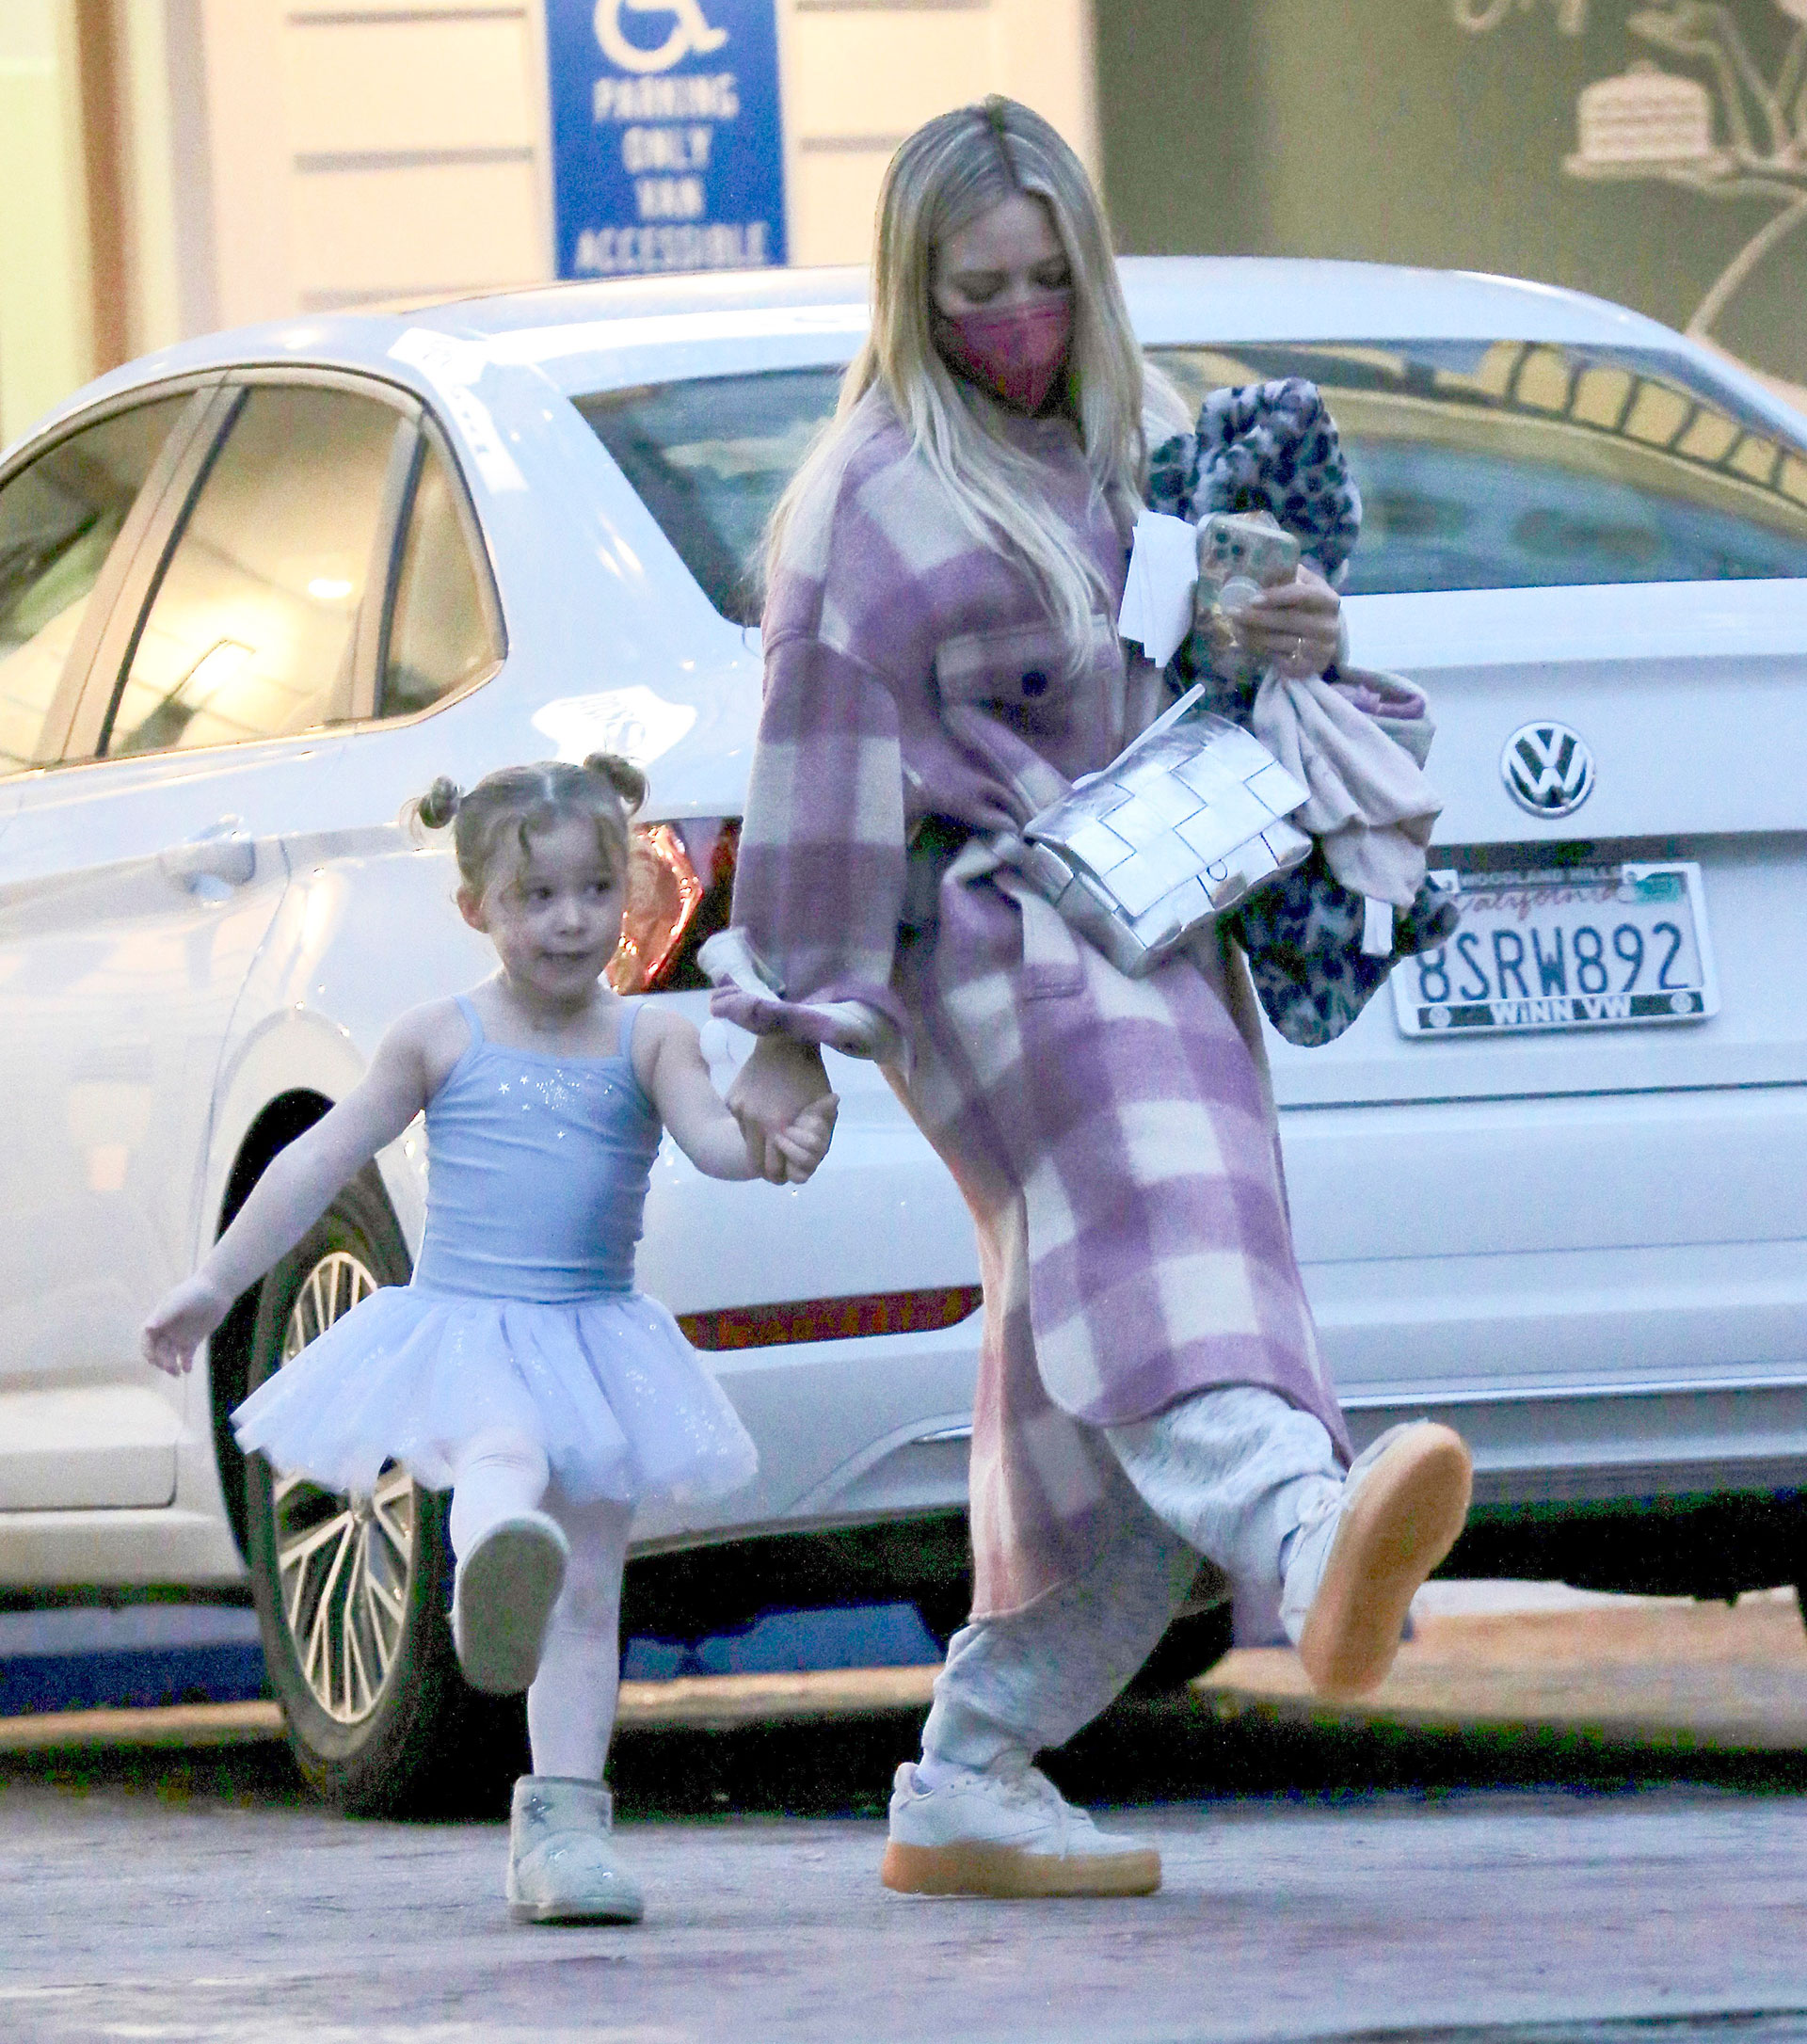 Un paseo divertido. Hilary Duff fue a buscar a su hija a la clase de ballet y regresaron caminando juntas por las calles de Studio City, California, y haciendo distintos pases de danza. La actriz lució un abrigo a cuadros color blanco y lila, mientras que la niña llevó su traje de bailarina